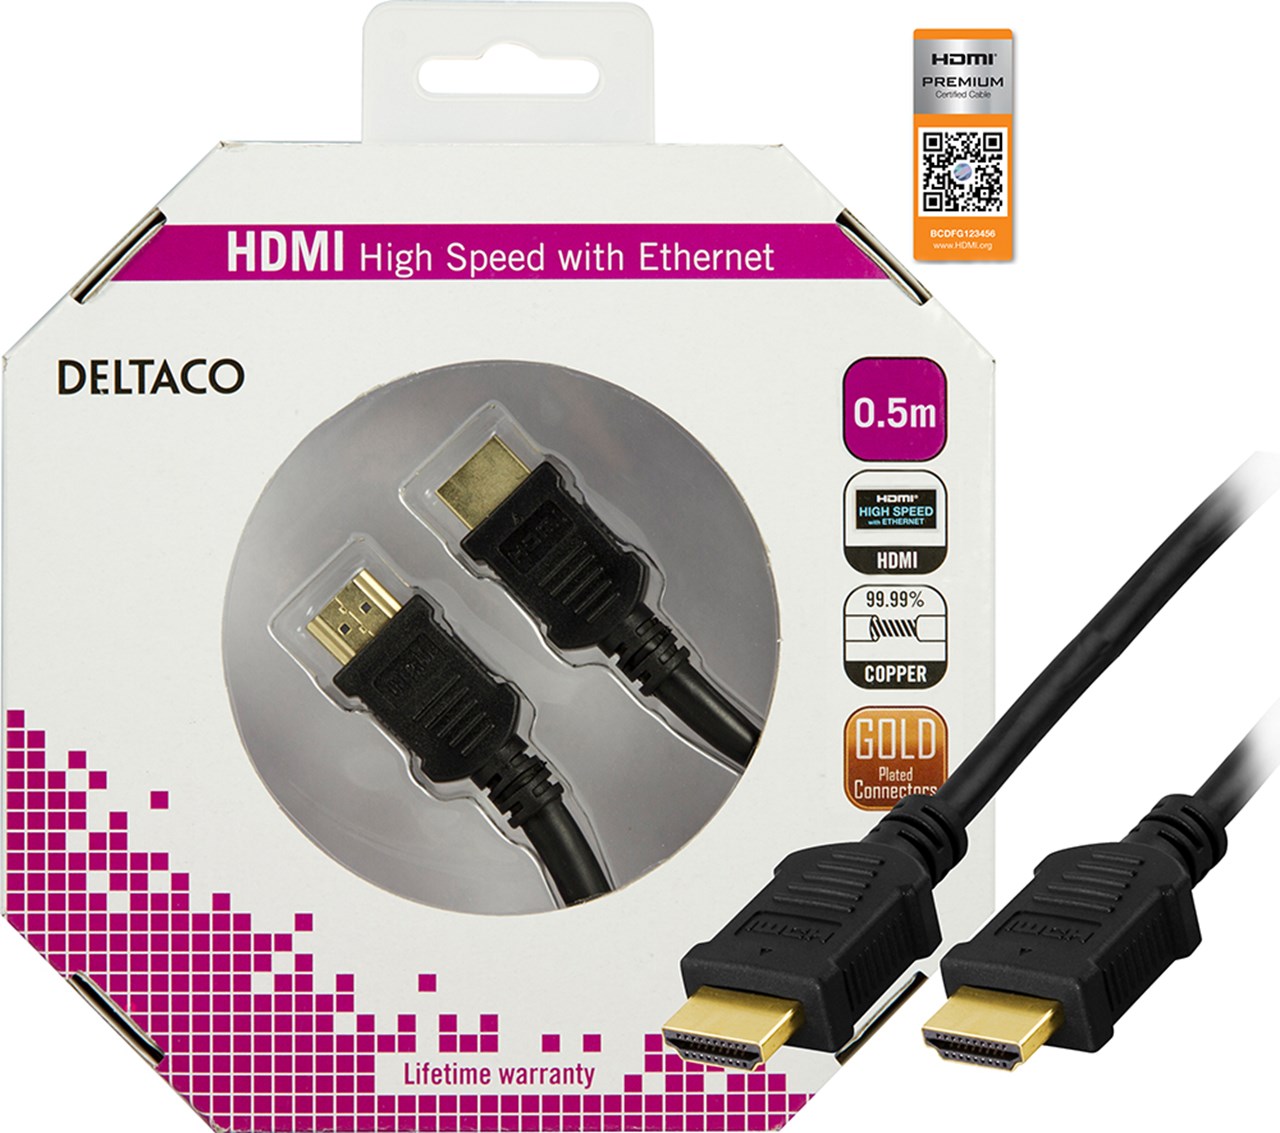 HDMI kabel Premium High Speed med Ethernet, 50cm, Guldbelagte stik, sort - PROconsult